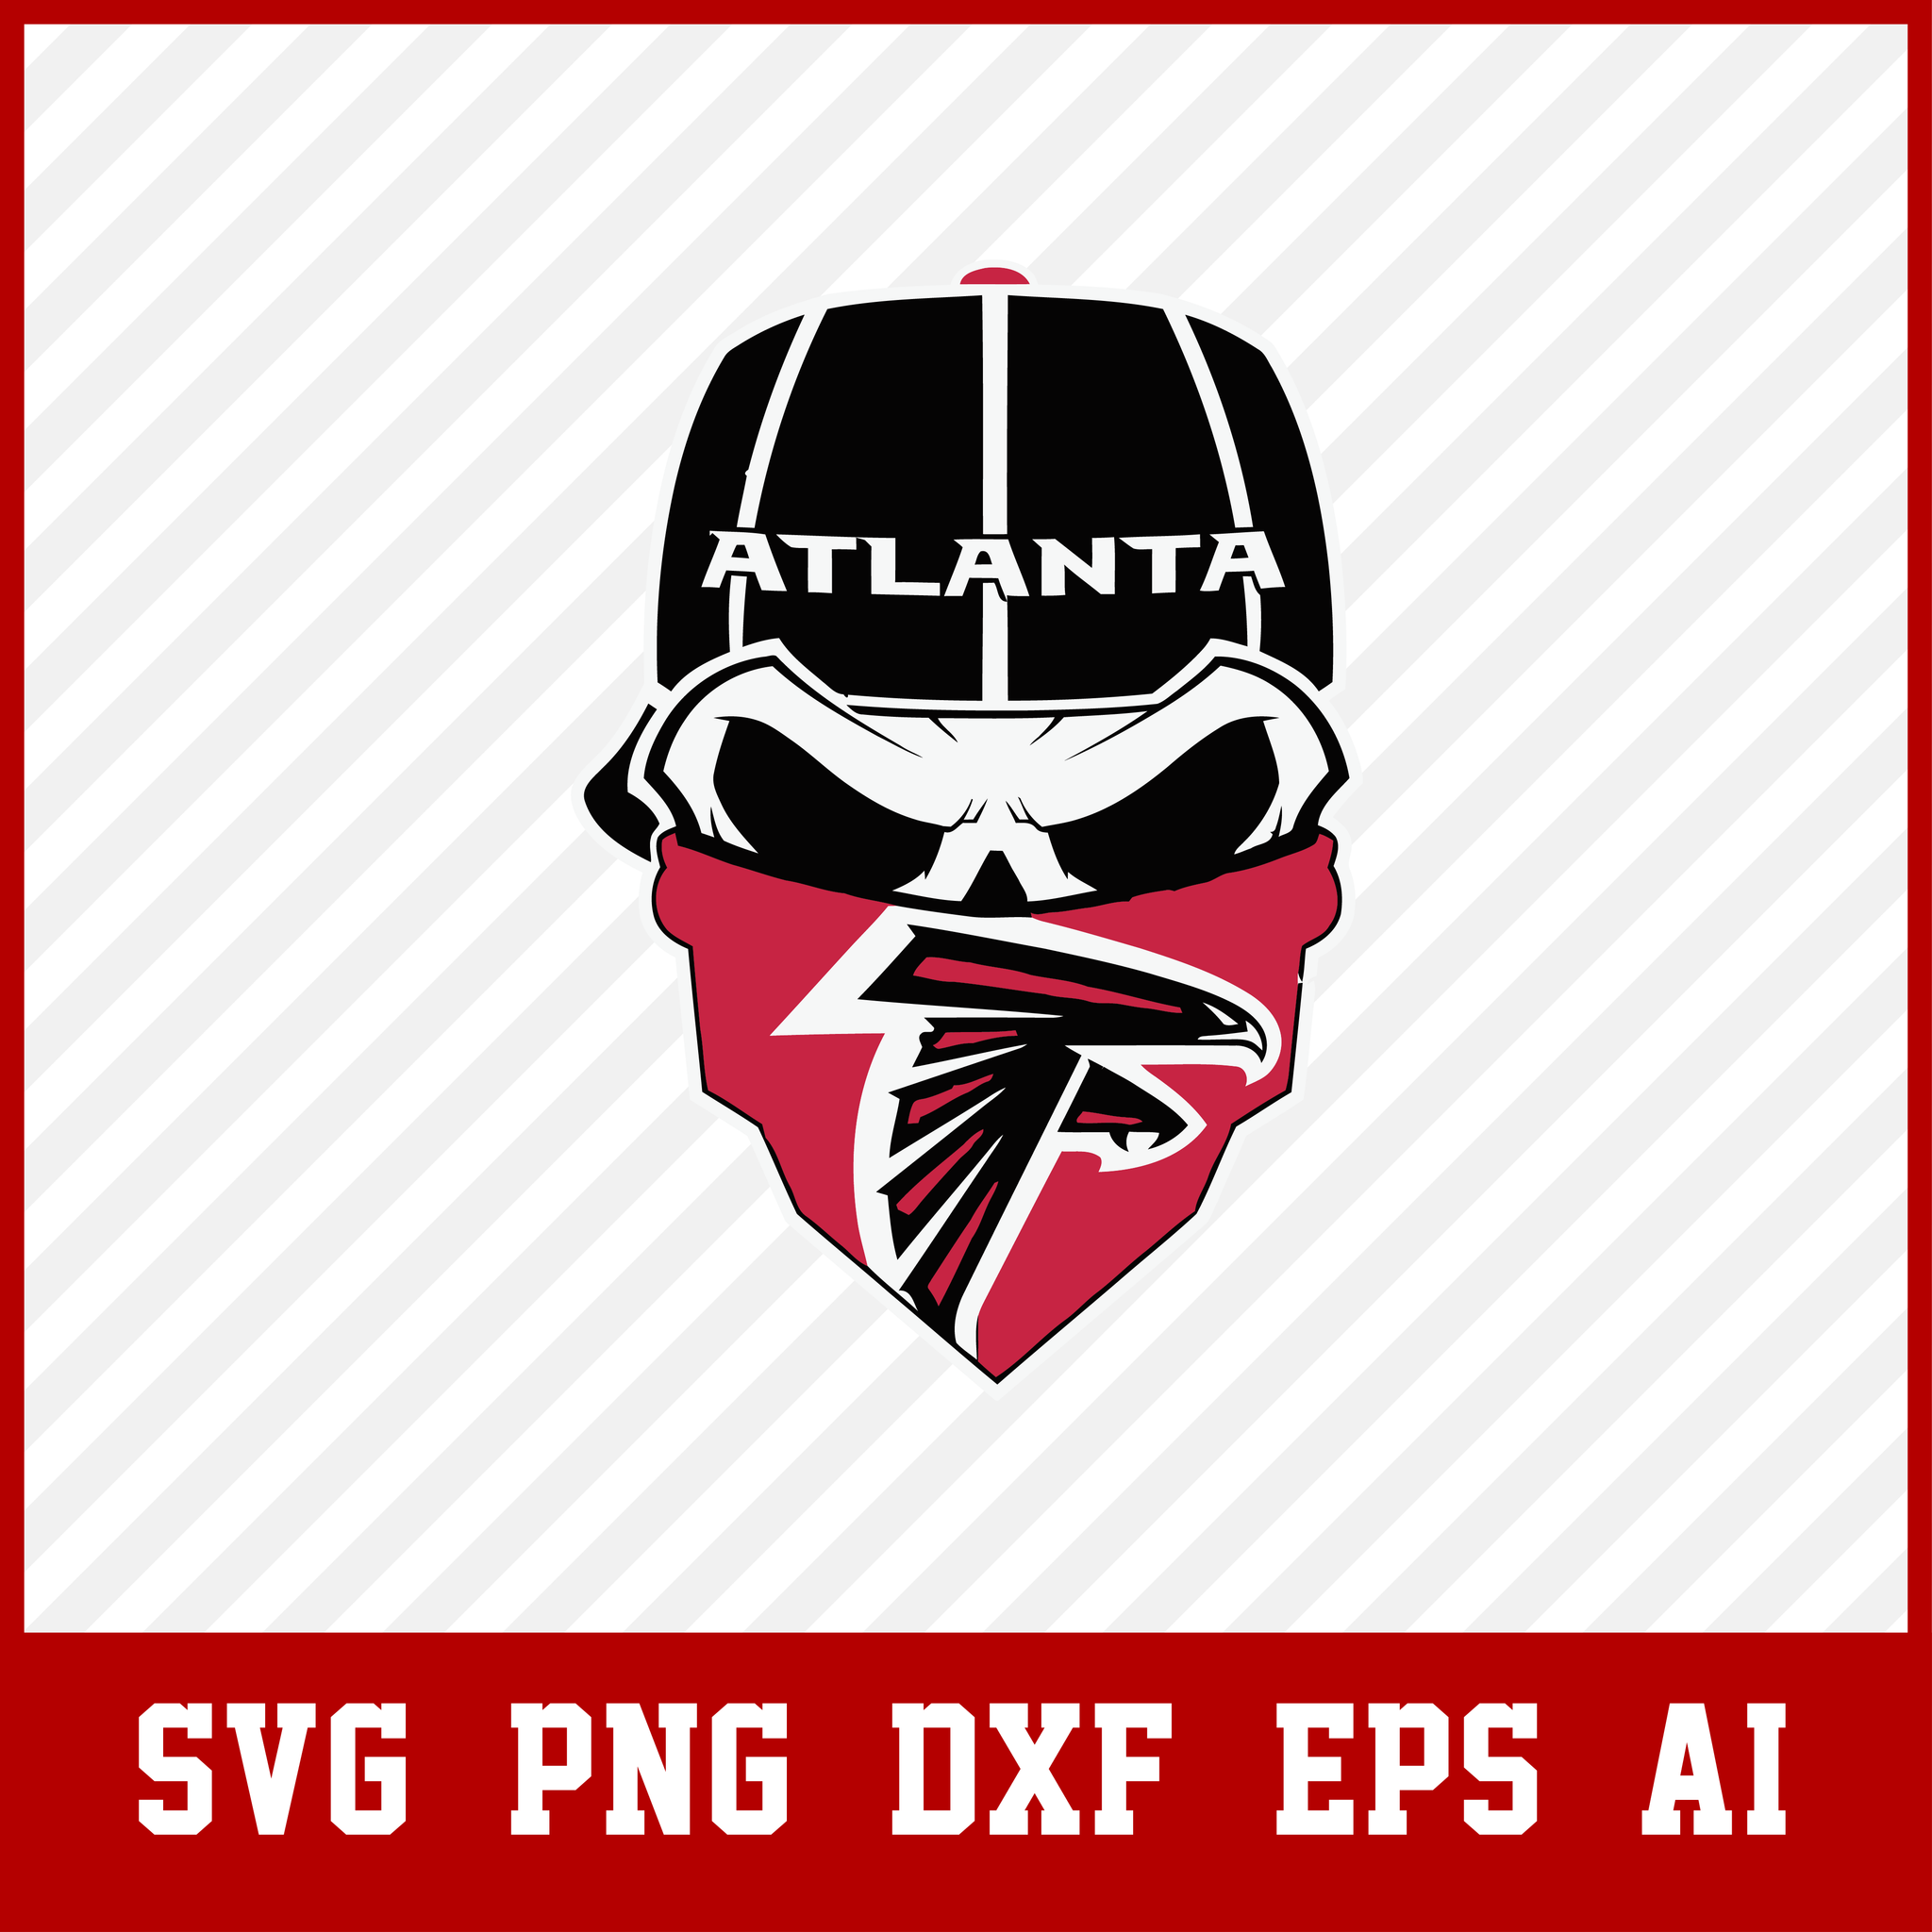 Make Up For Ever Logo - PNG Logo Vector Downloads (SVG, EPS)